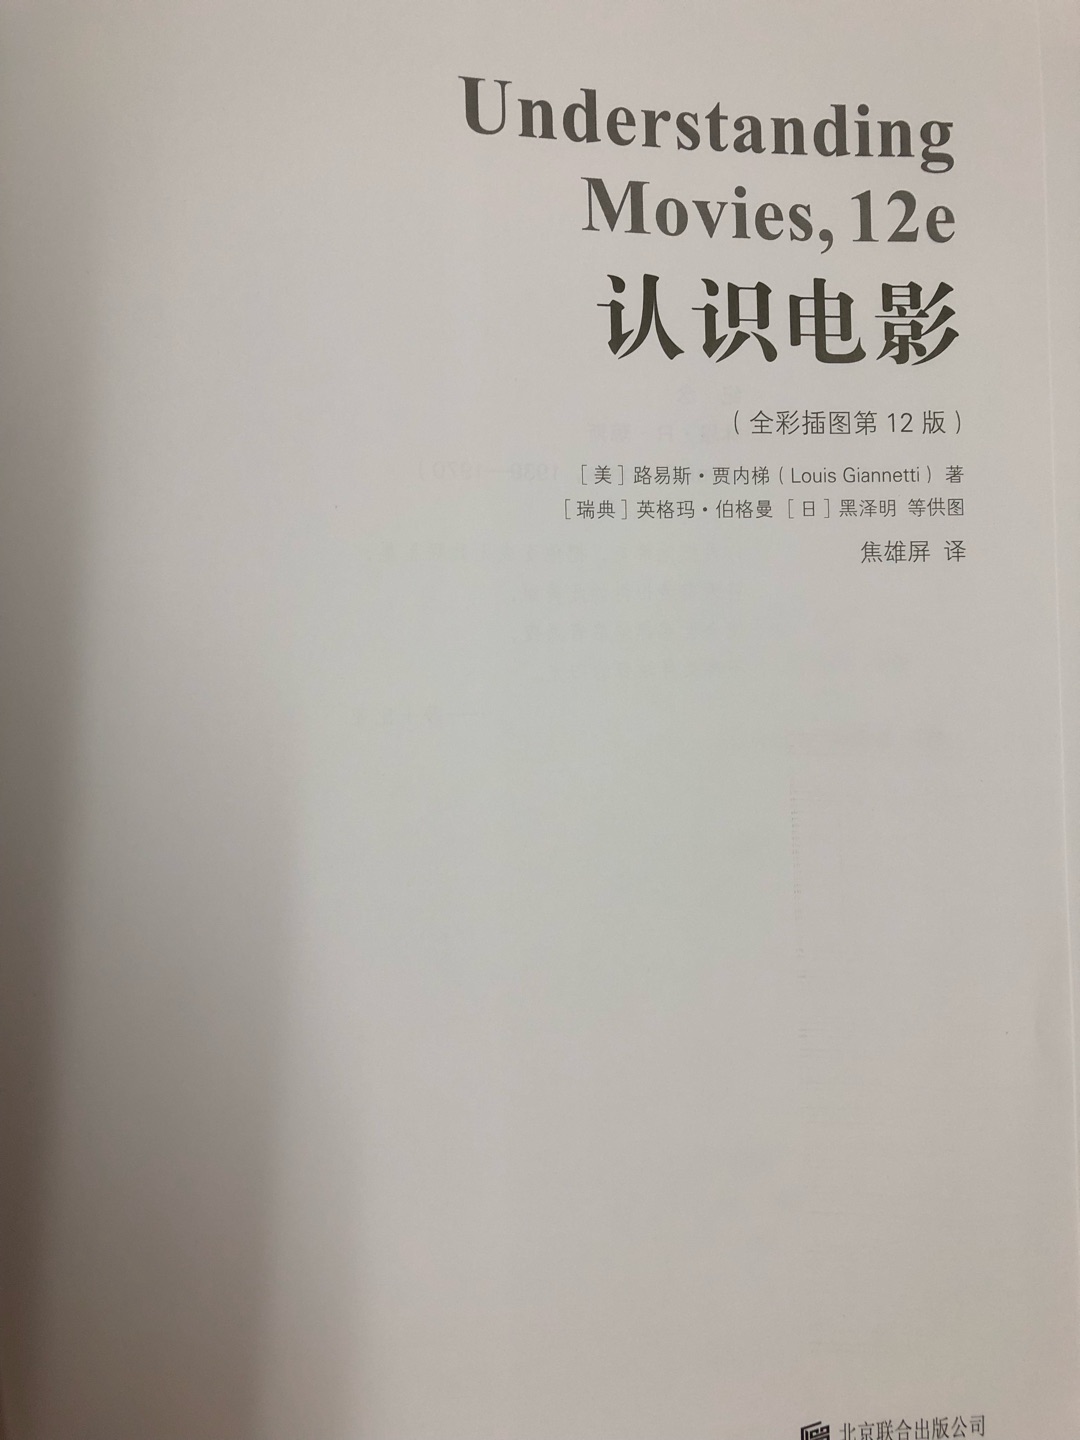 这本书很不错，对我们了解电影知识，分析电影很有帮助。